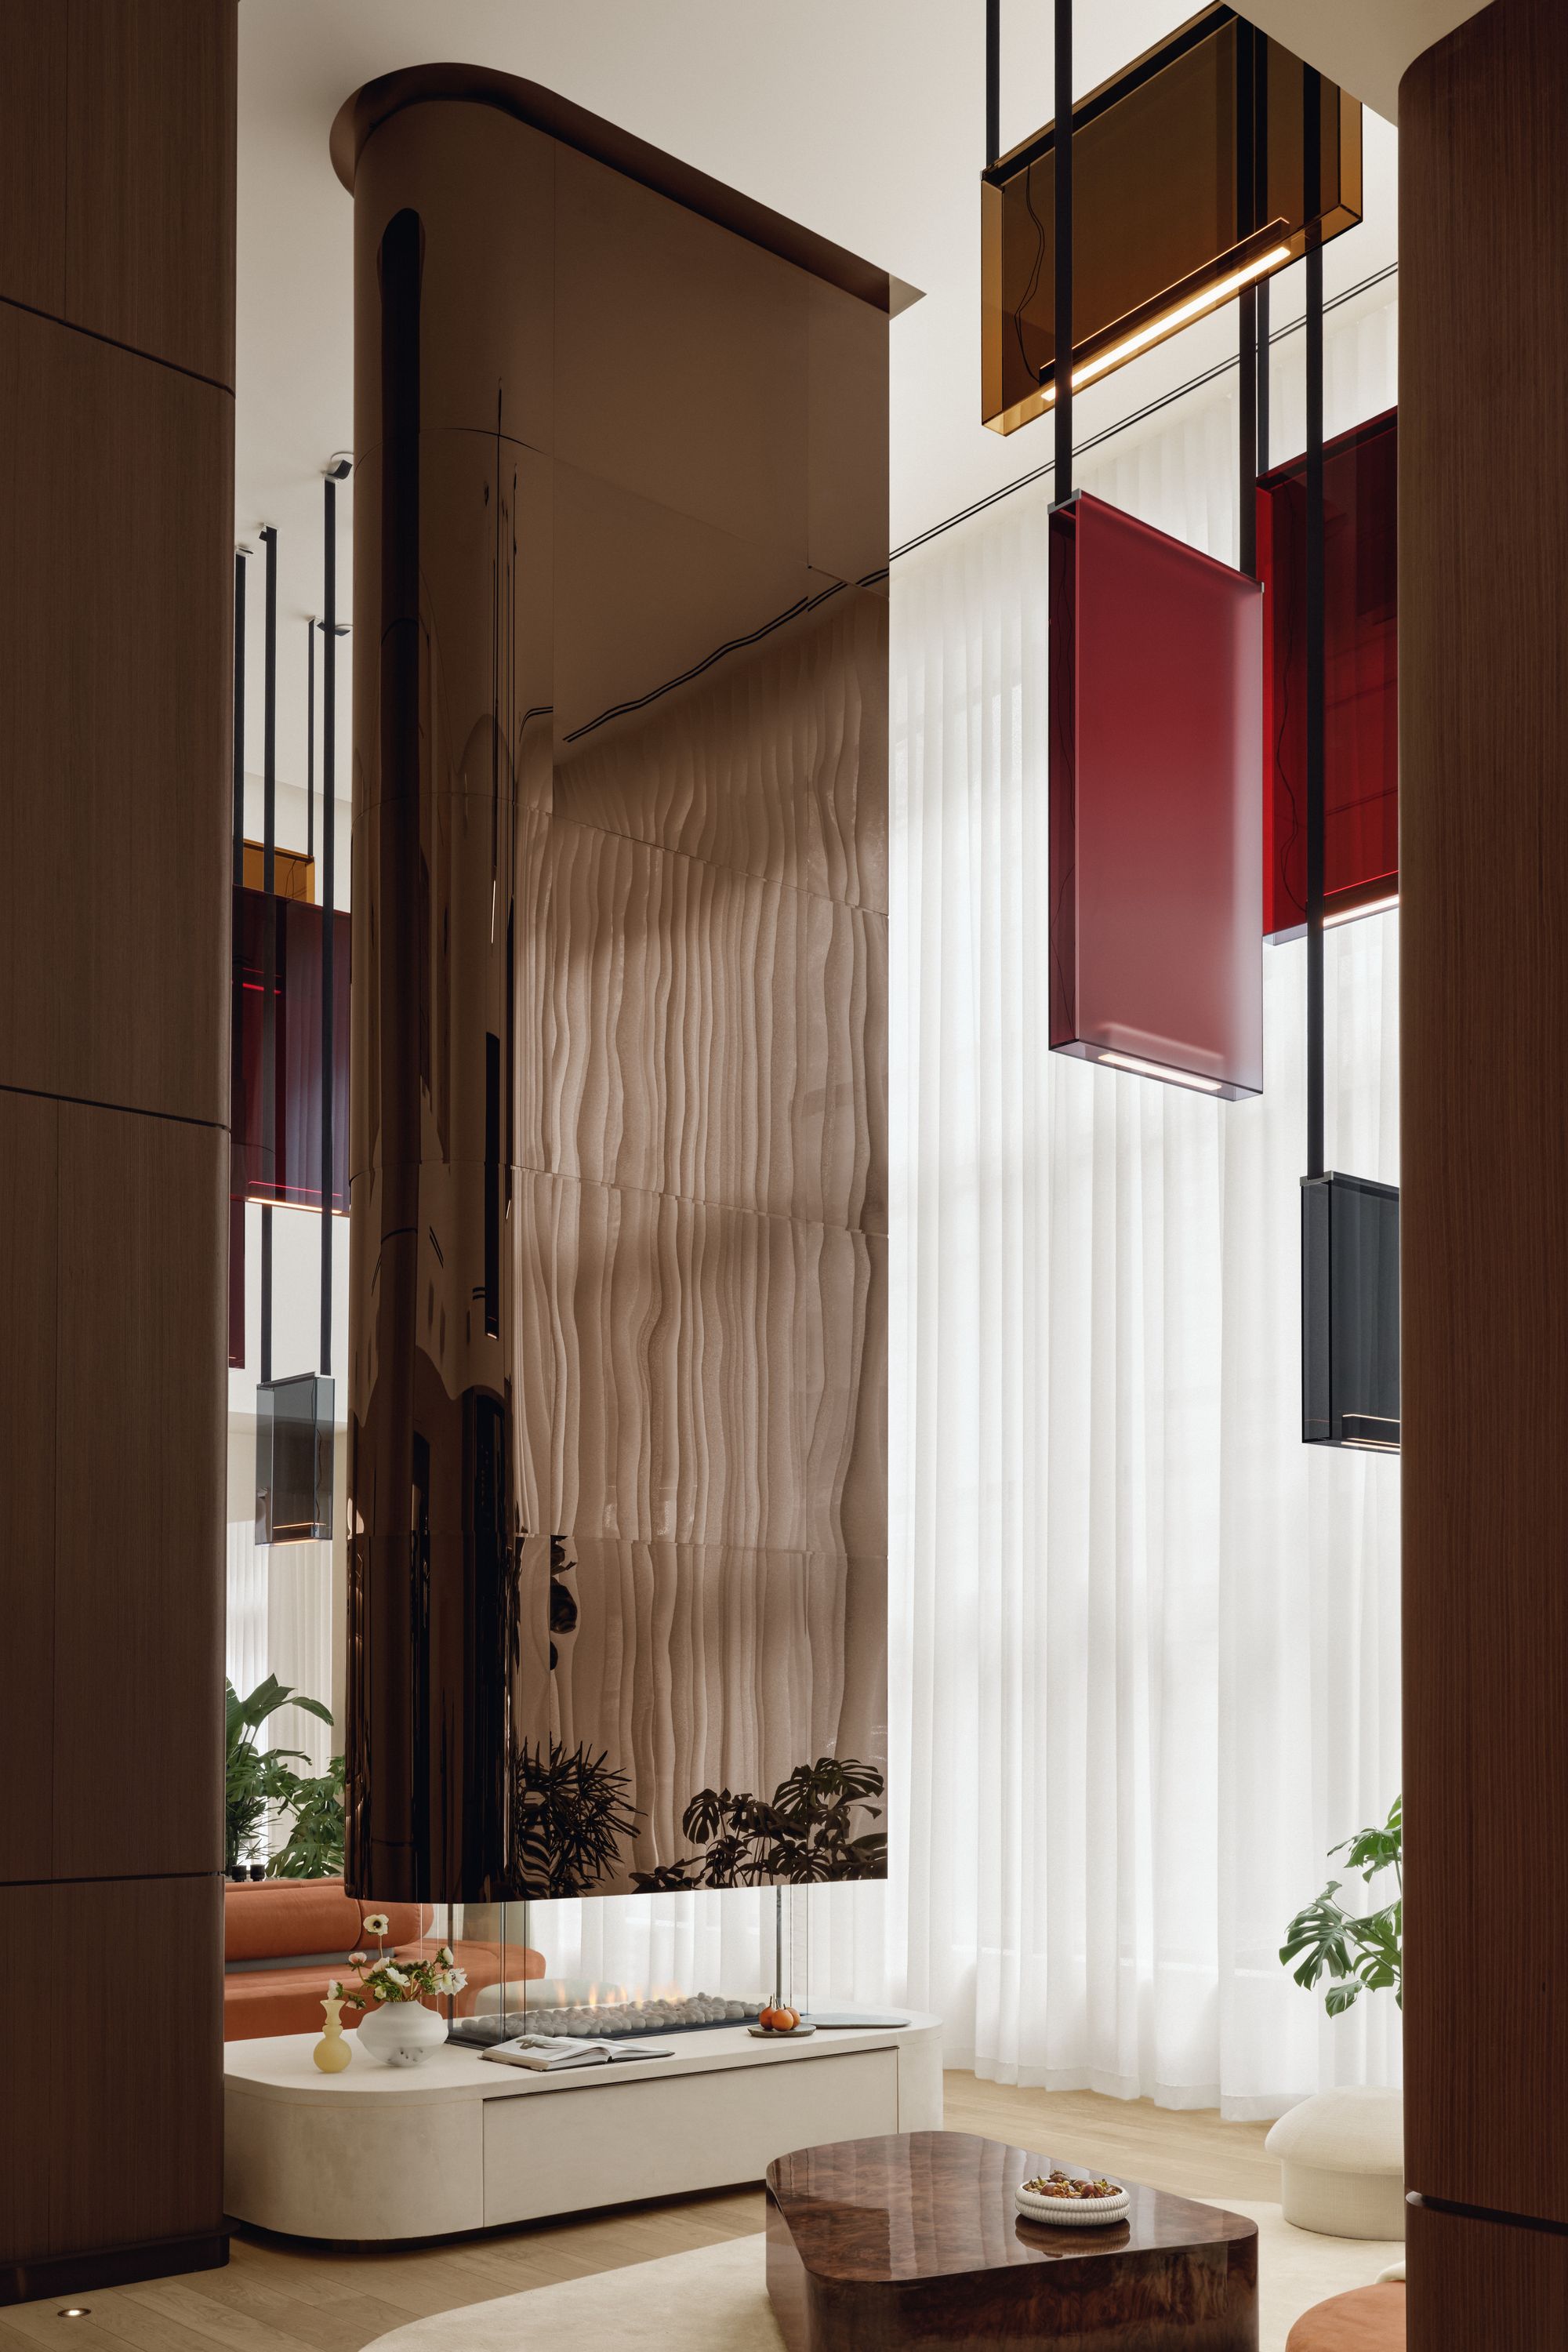 图片[5]|蒙特利尔市中心时尚酒店|ART-Arrakis | 建筑室内设计的创新与灵感